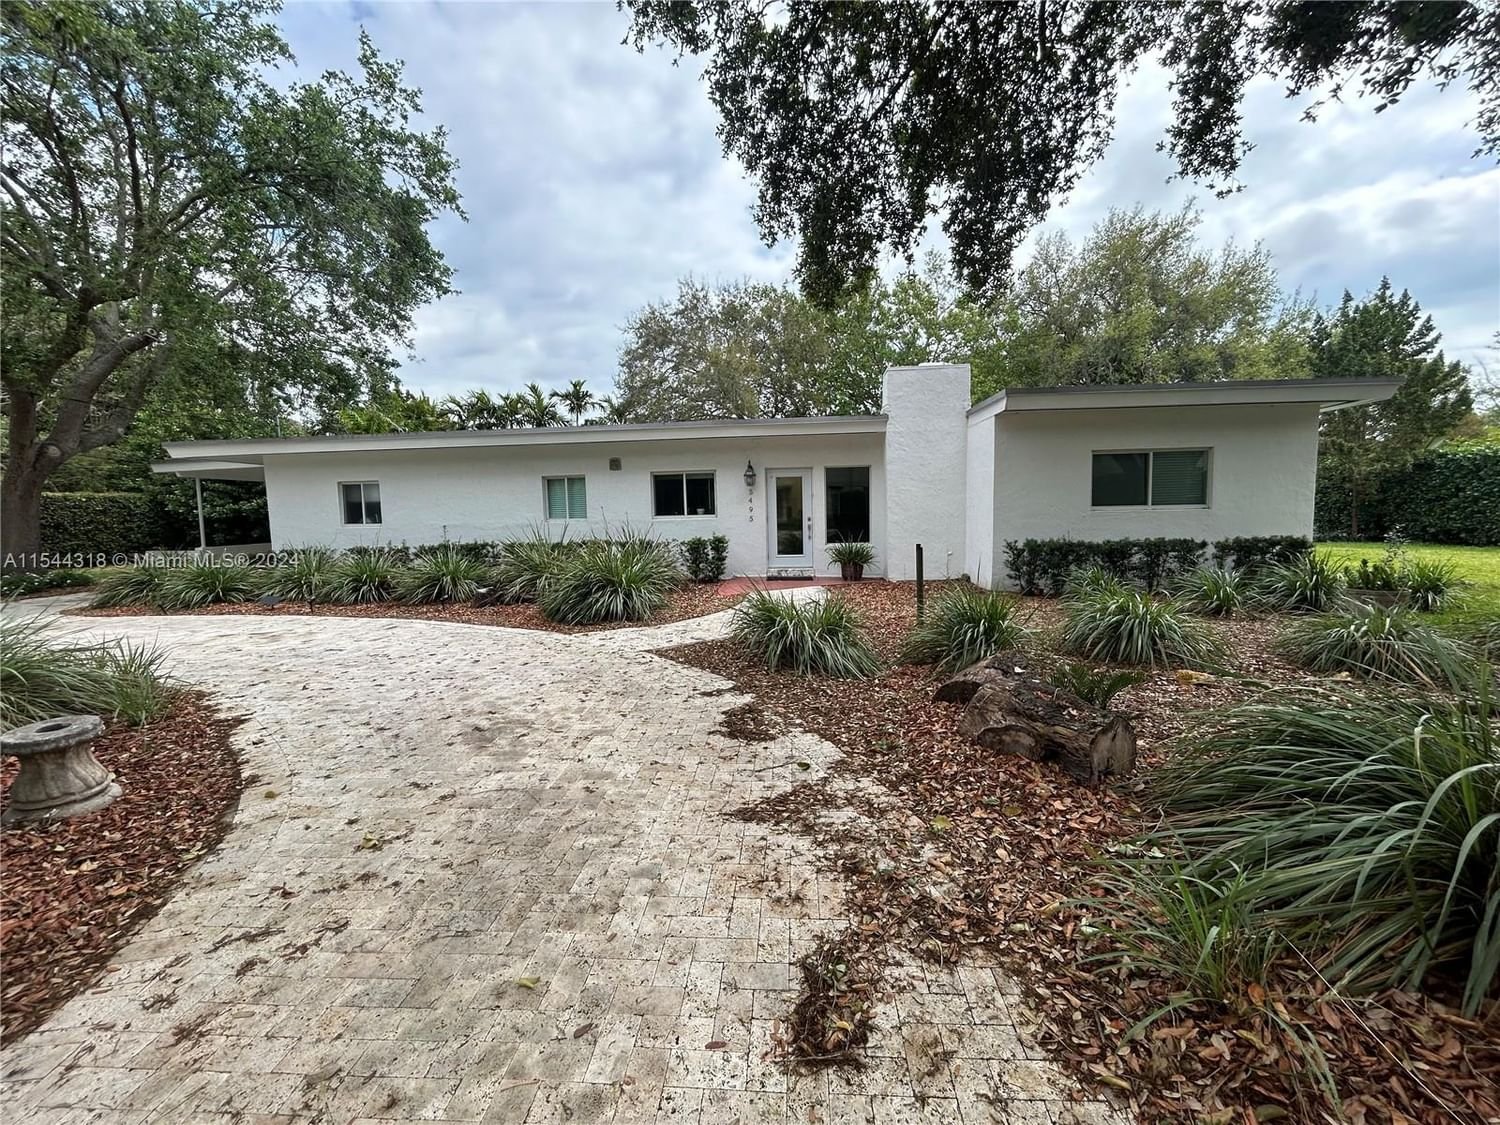 Real estate property located at 5495 68th Ave, Miami-Dade County, ESTONIA SUB, Miami, FL